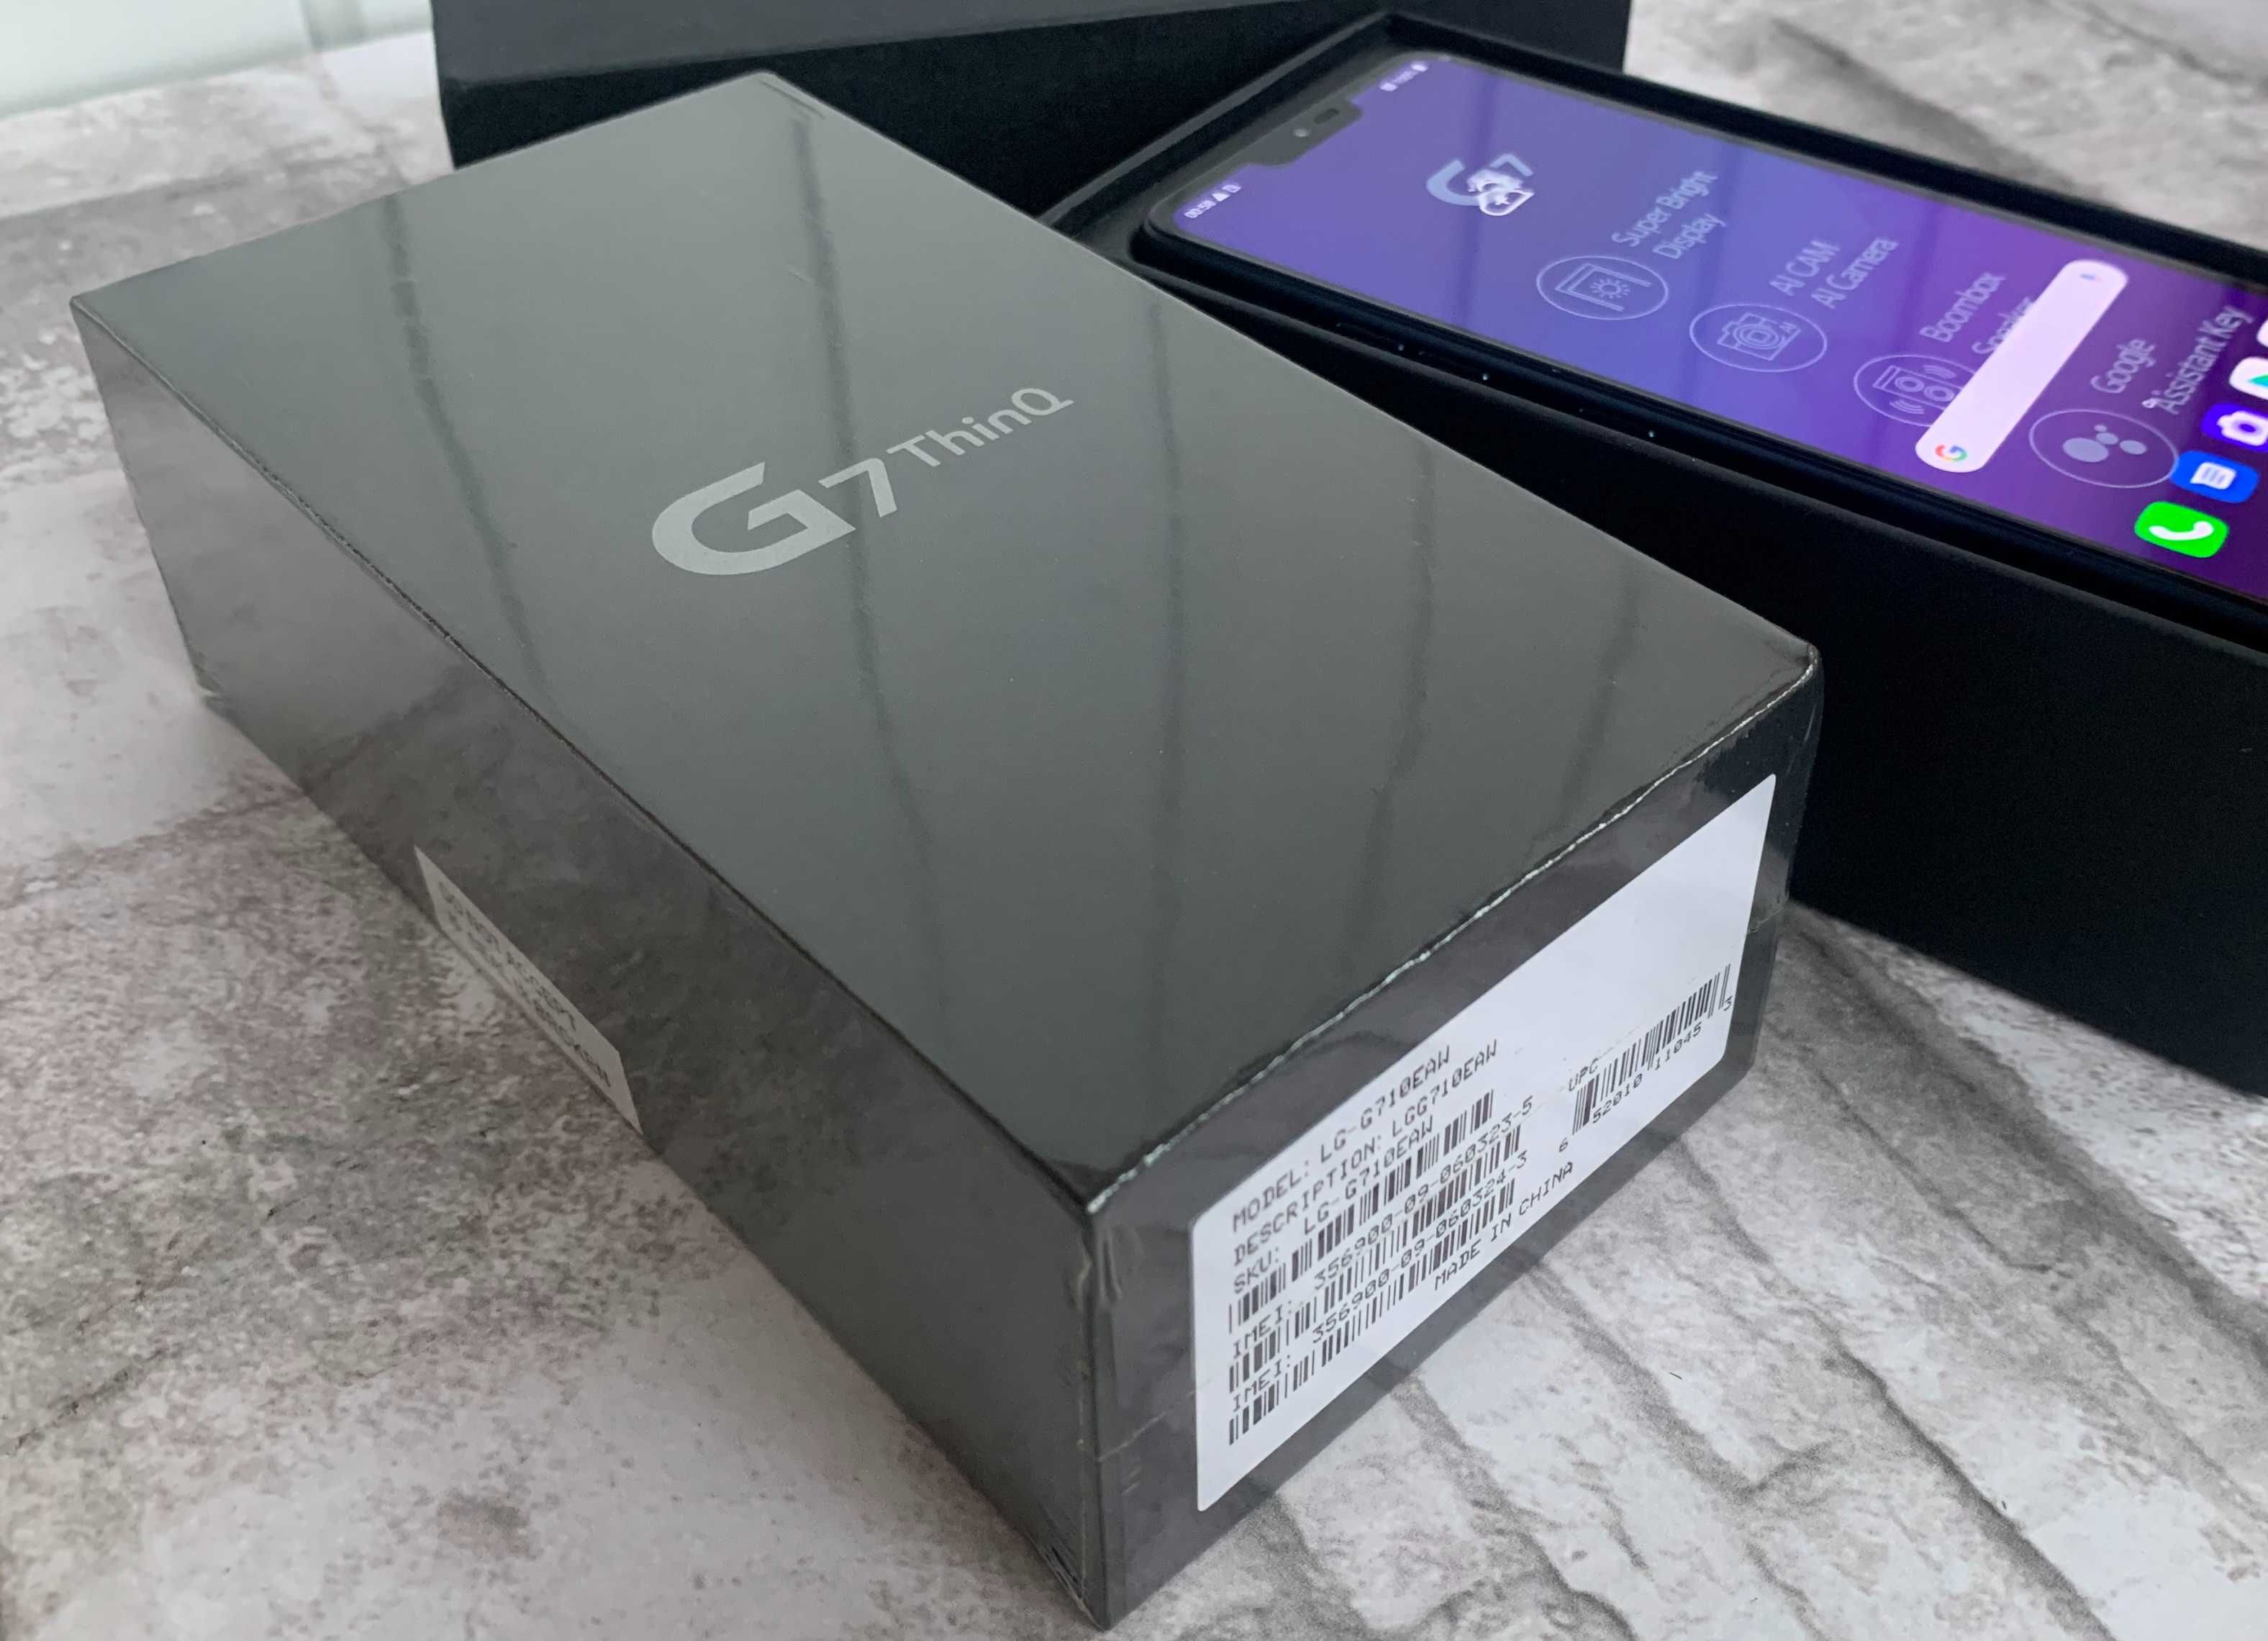 ꧁ LG G7 Dual 6/128 Gb ThinQ G710 EAW - Новий лж ж7  • (є:V40+,G8s,G9)꧂